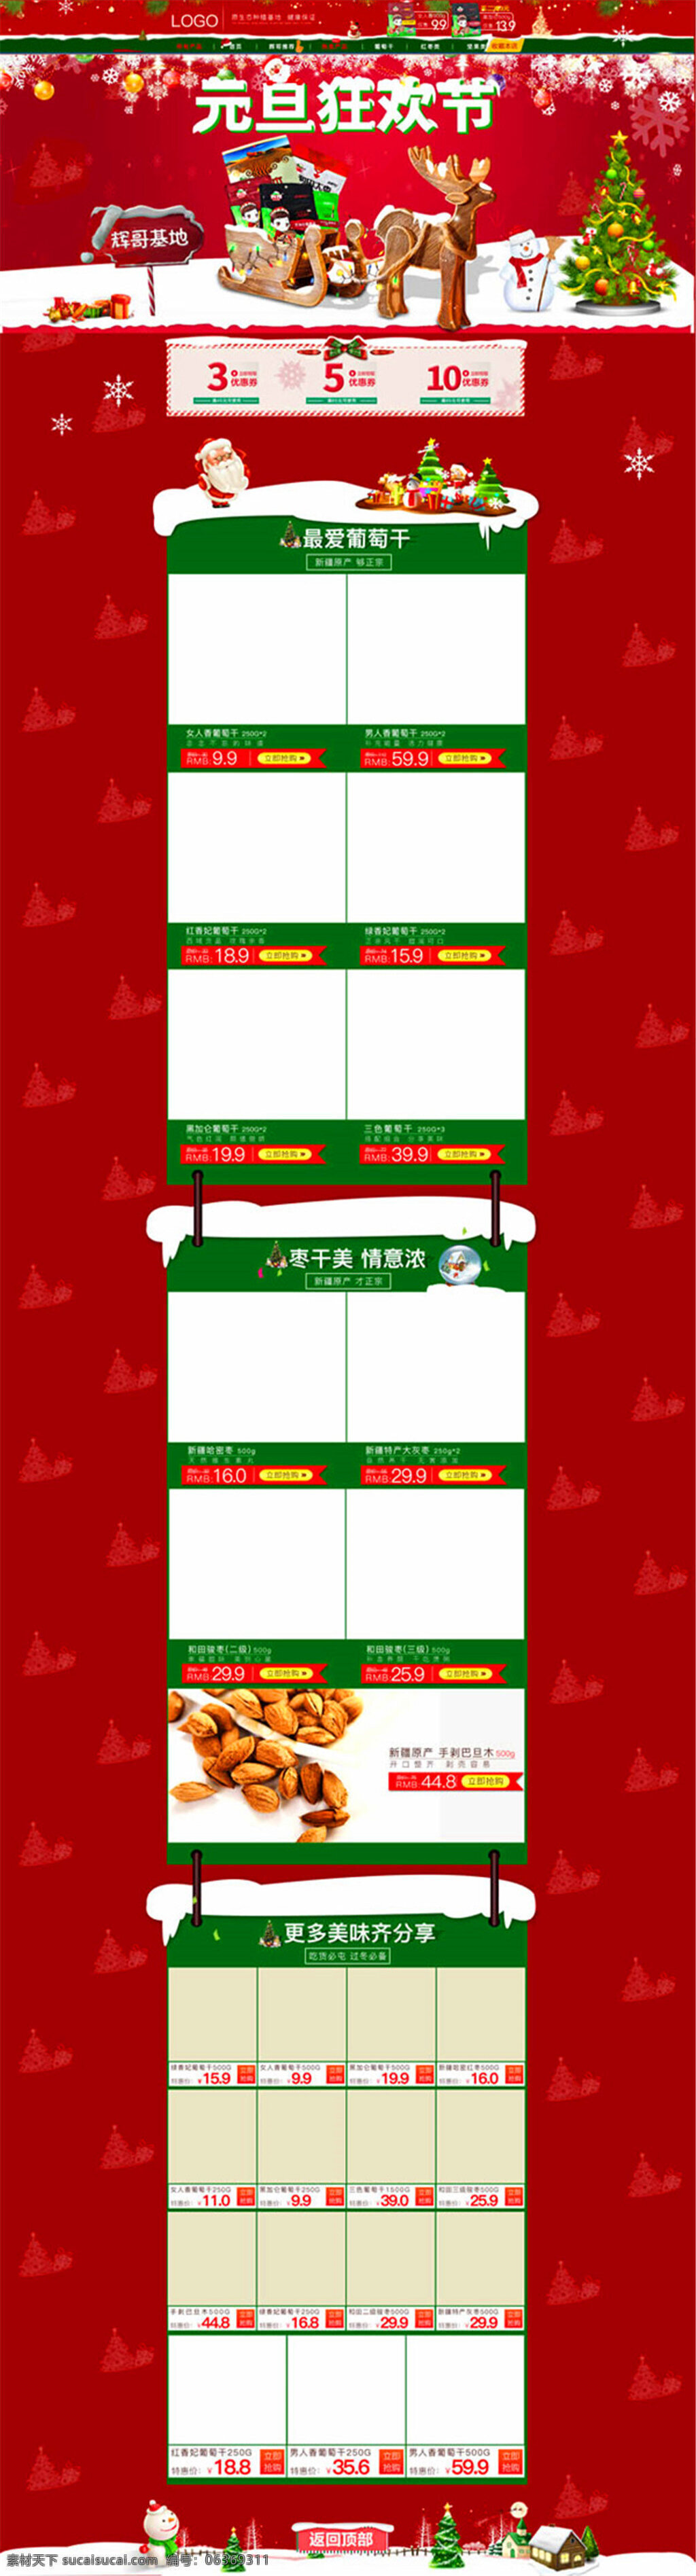 美食 坚果 店铺 模板 元旦狂欢节 零食 食品 圣诞节 元旦 圣诞树 雪人 圣诞装饰 圣诞背景图片